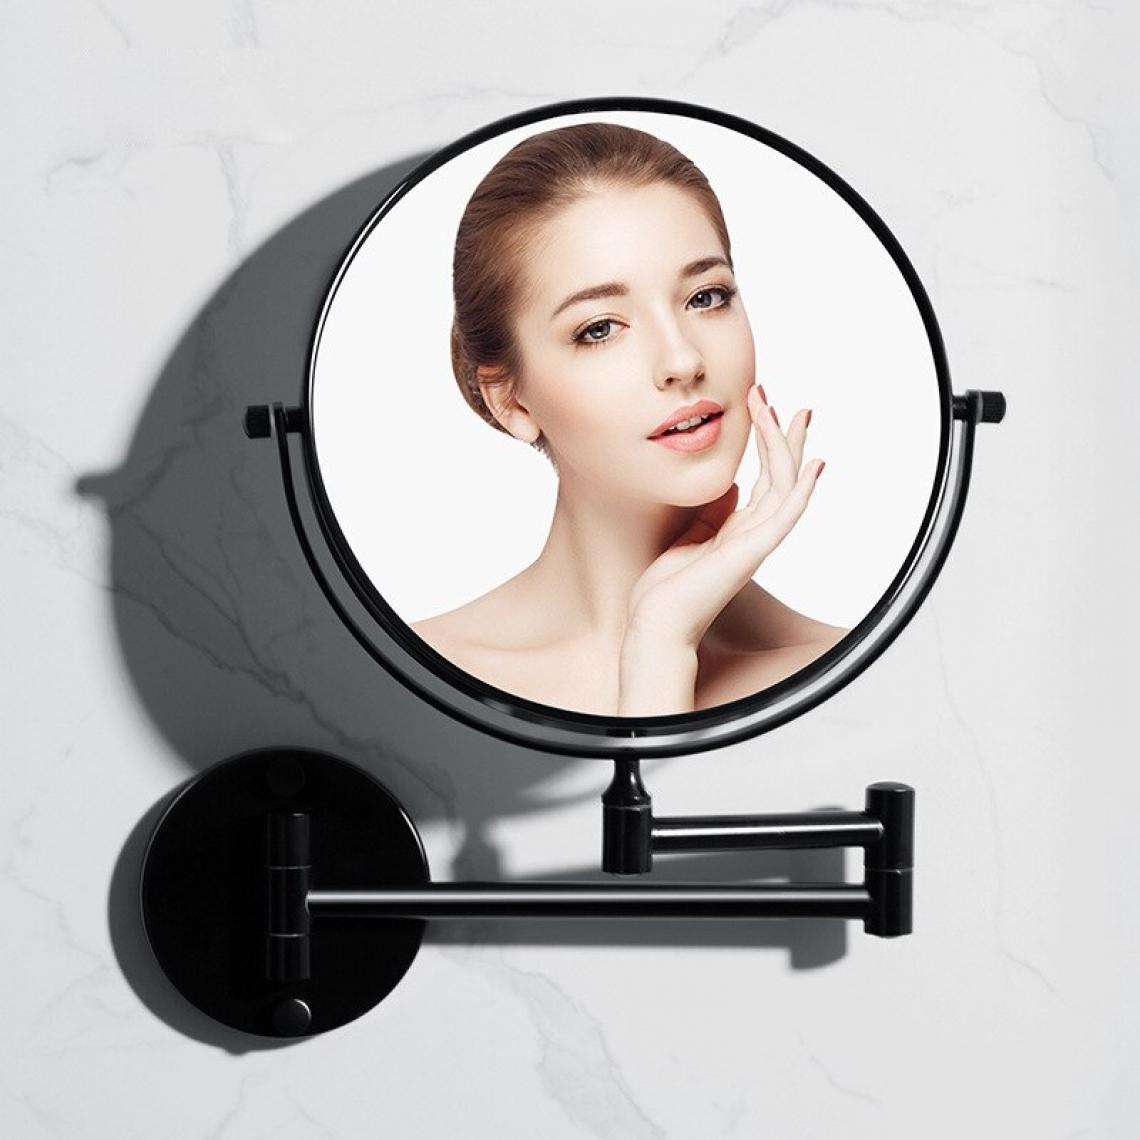 Universal - Salle de bains miroir de beauté salle de bains miroir noir installation murale miroir de maquillage loupe pliante miroir mural suspendu |(Le noir) - Miroir de salle de bain